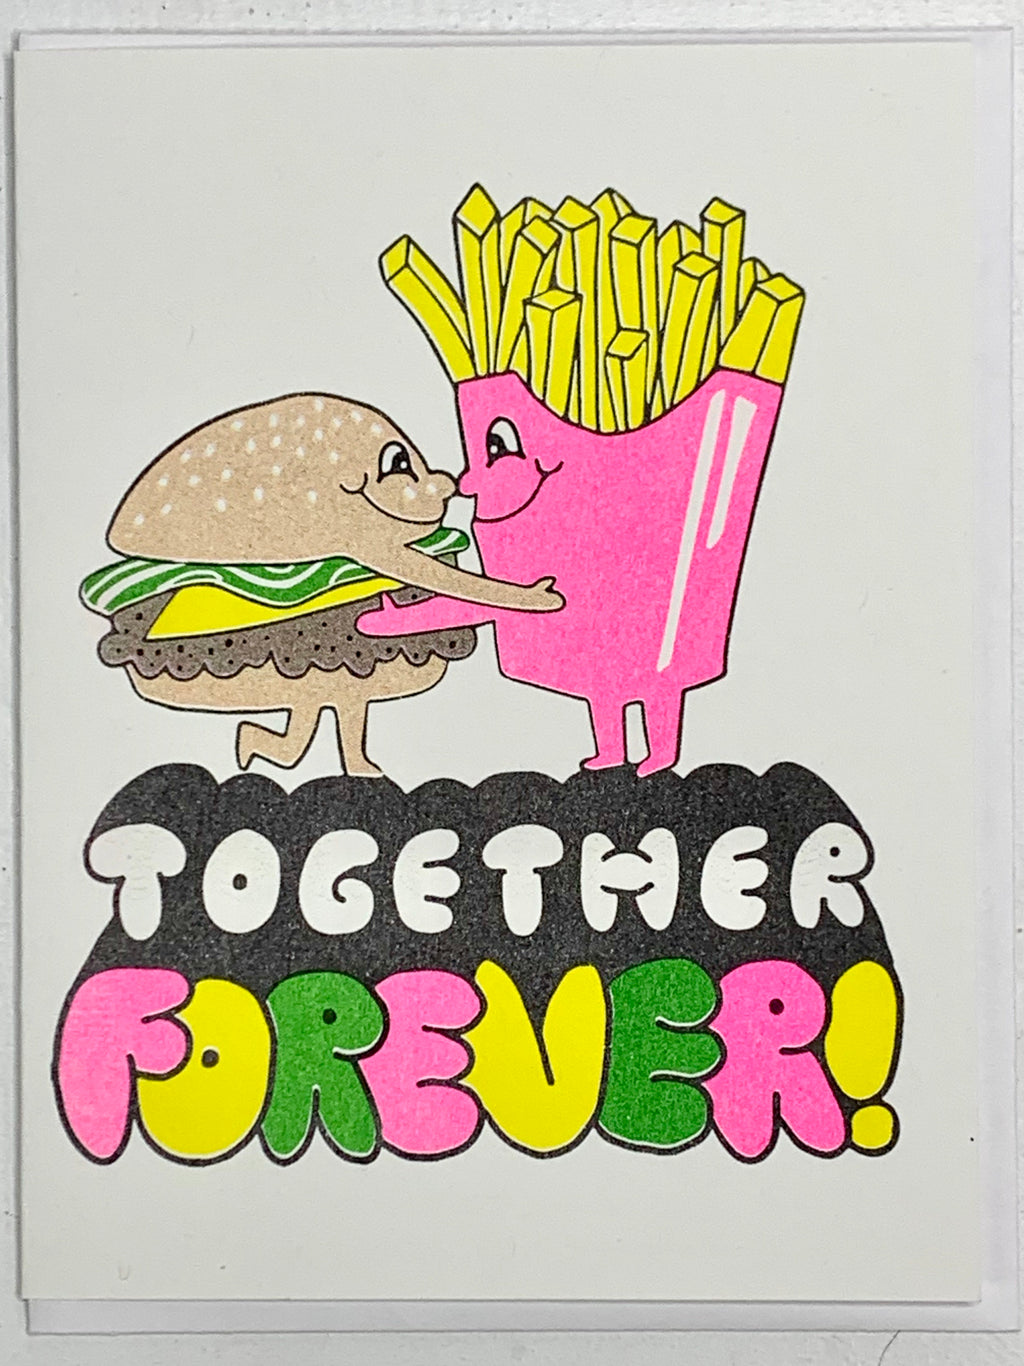 Together Forever!